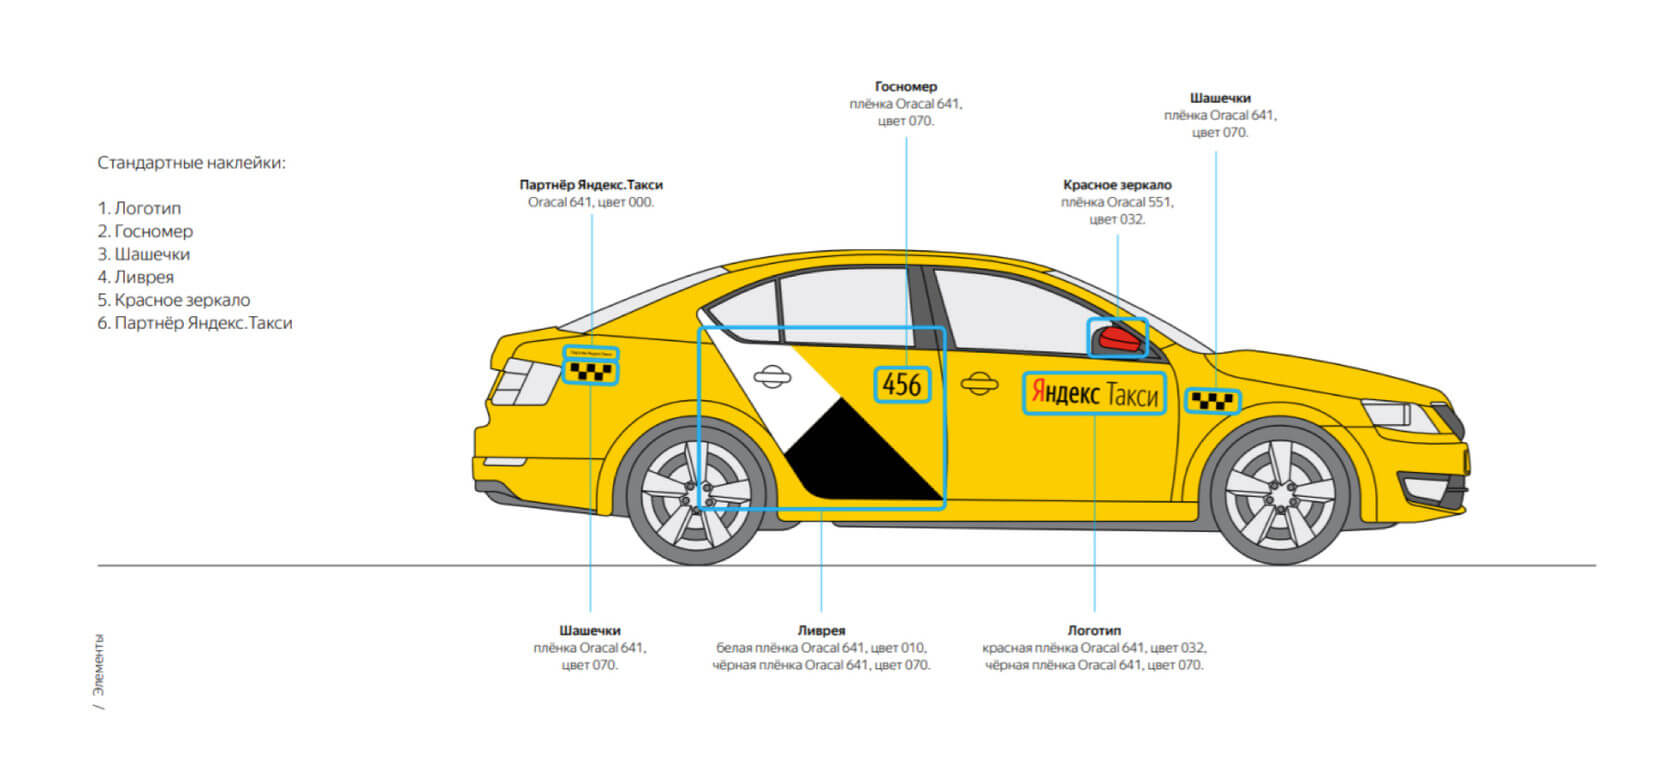 Наклейки Яндекс такси для брендирования